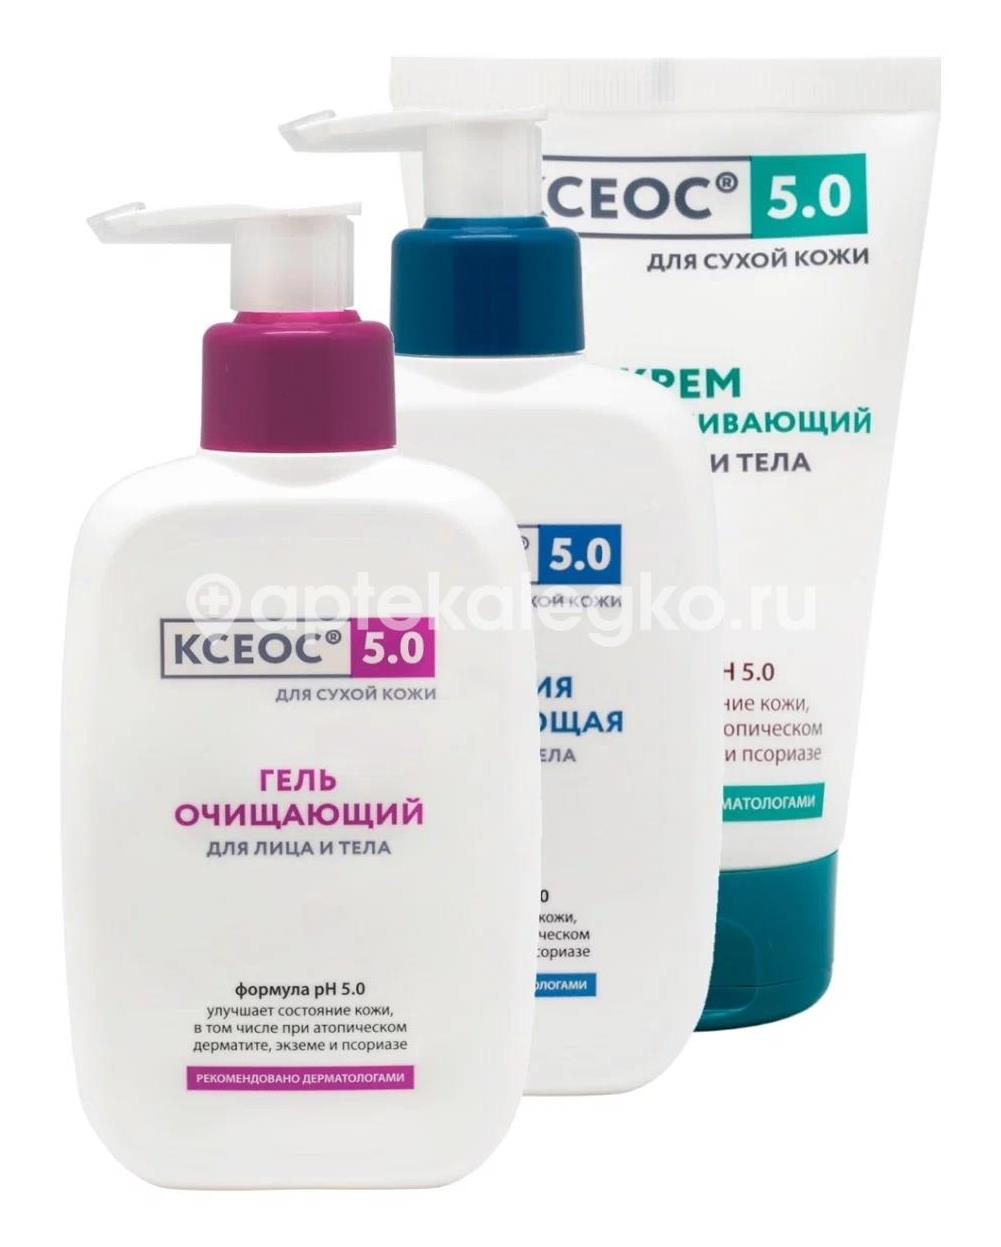 Ксеос ph 5.0 эмульсия увлажняющая для лица и тела для сухой кожи, 250 мл - 3